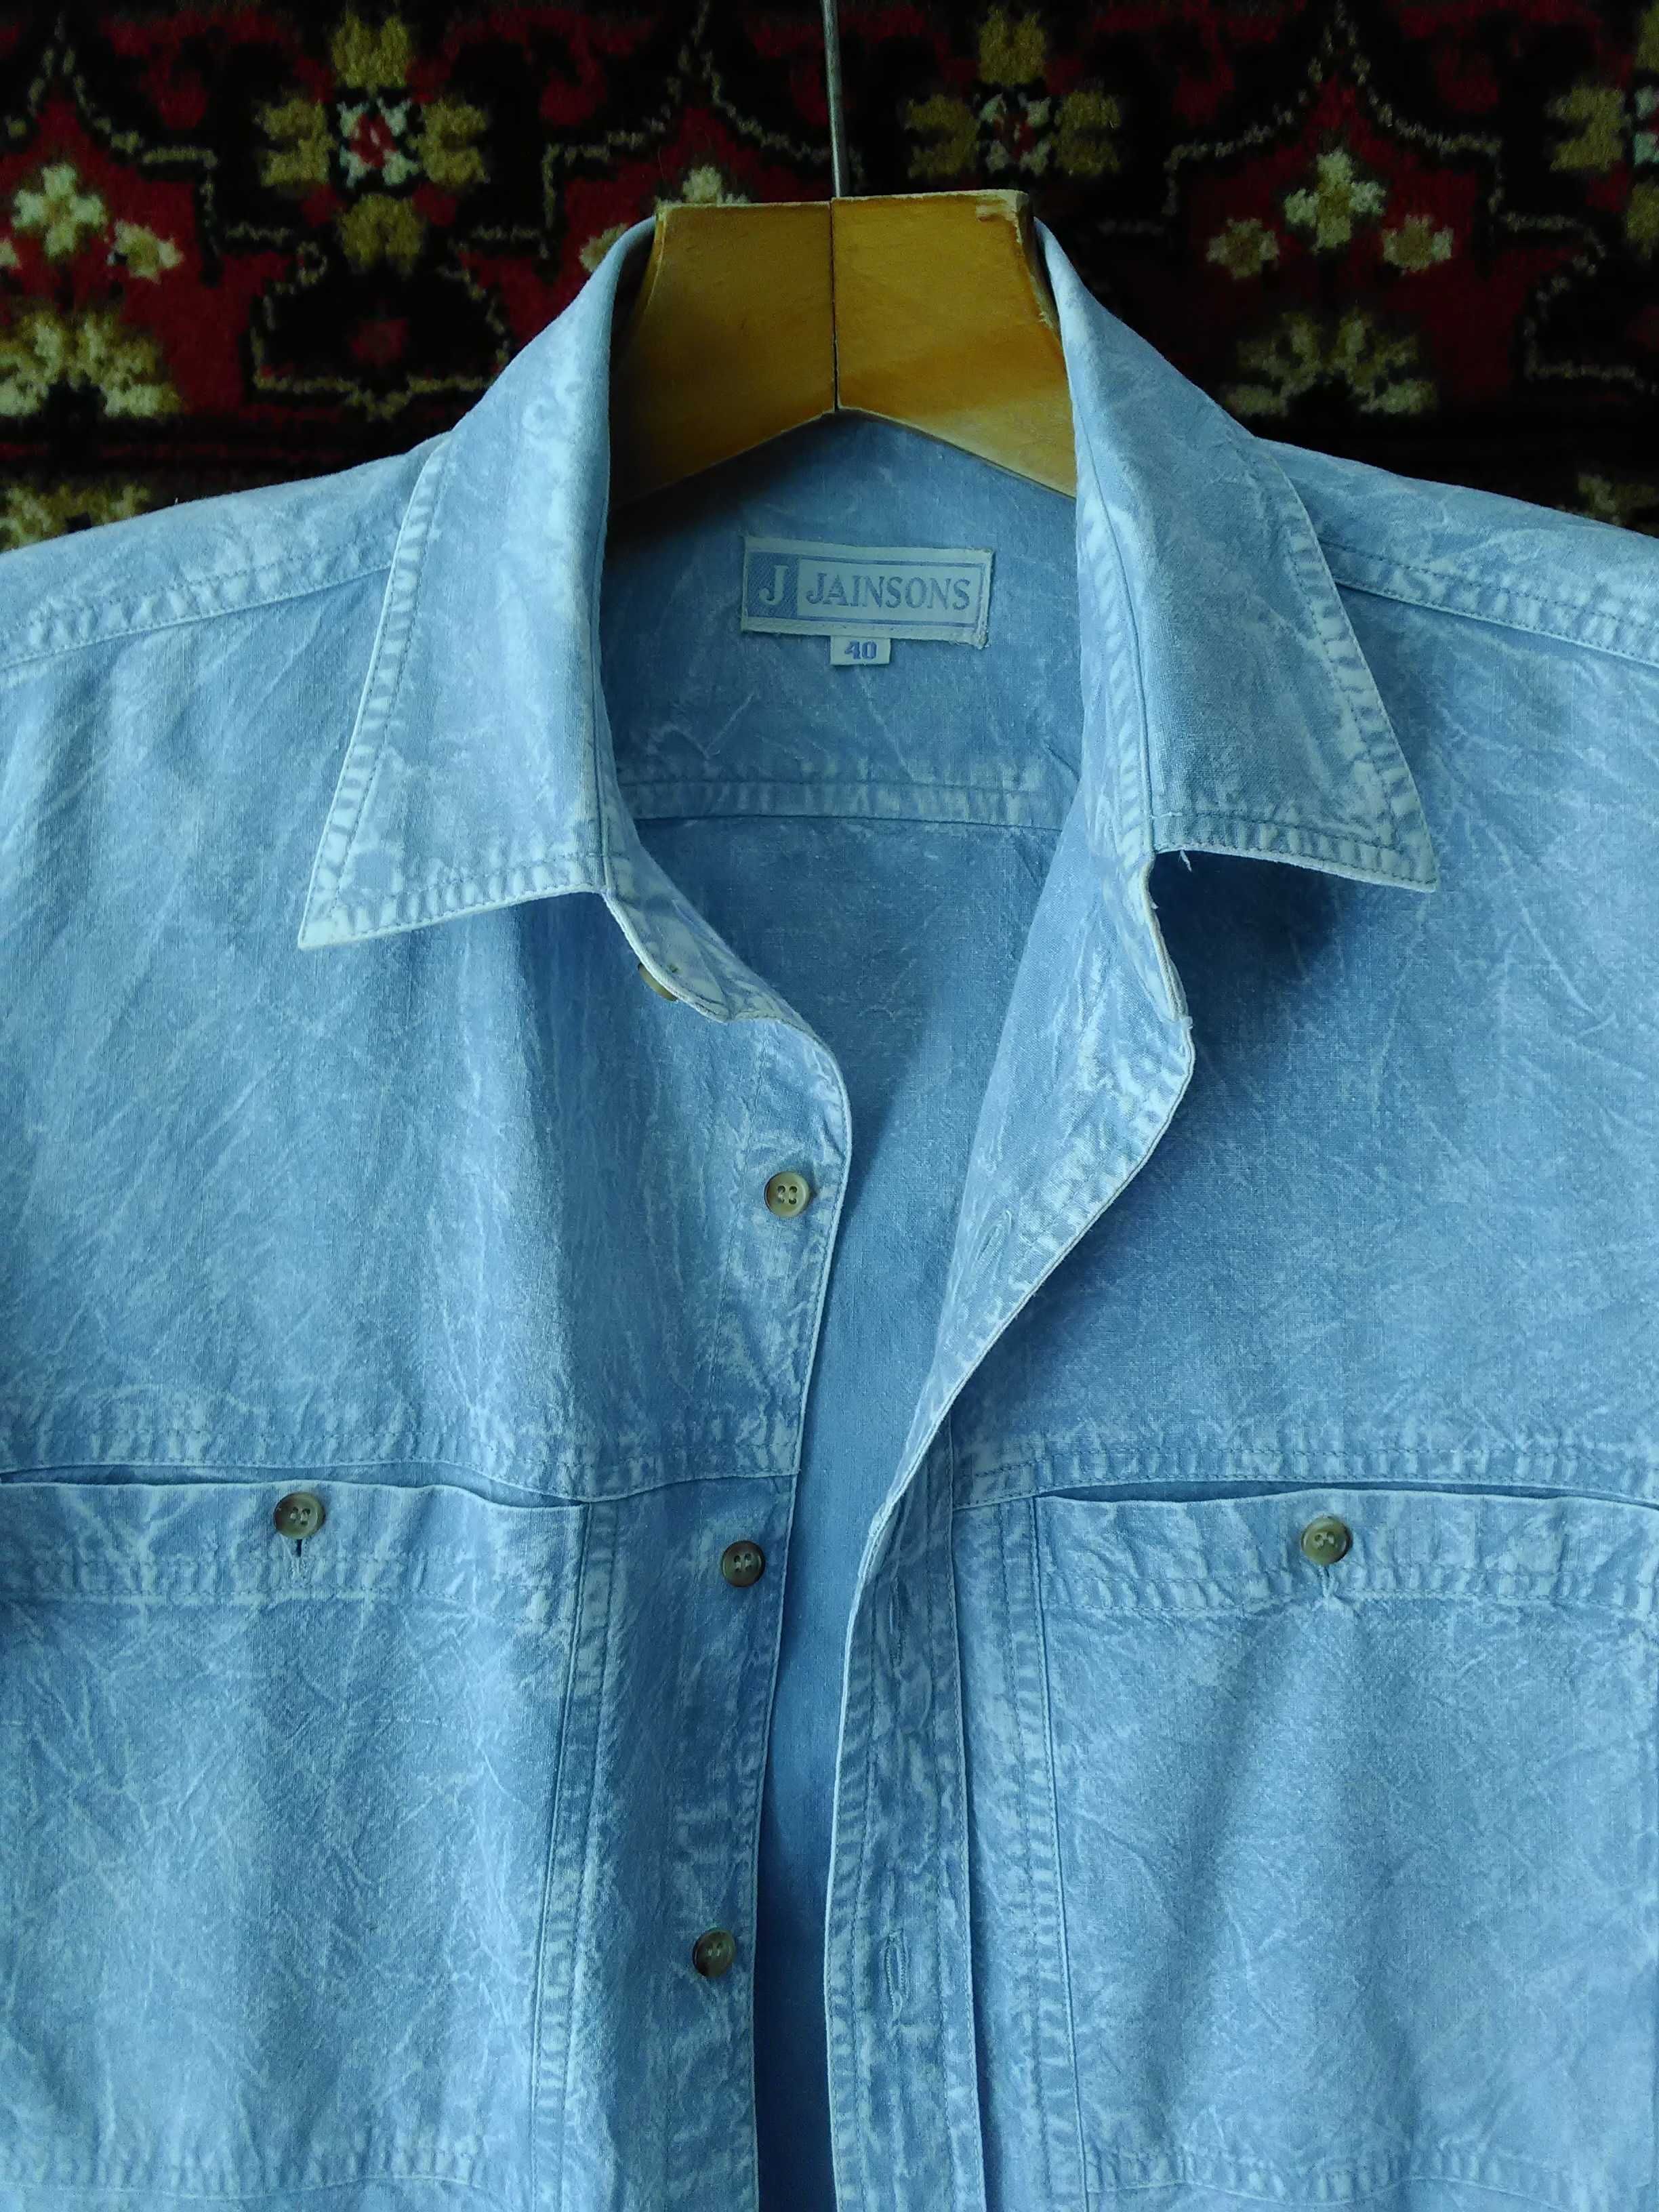 Джинсовая  рубашка-варенка " jainsons" новая, размер -46, хлопок -100%